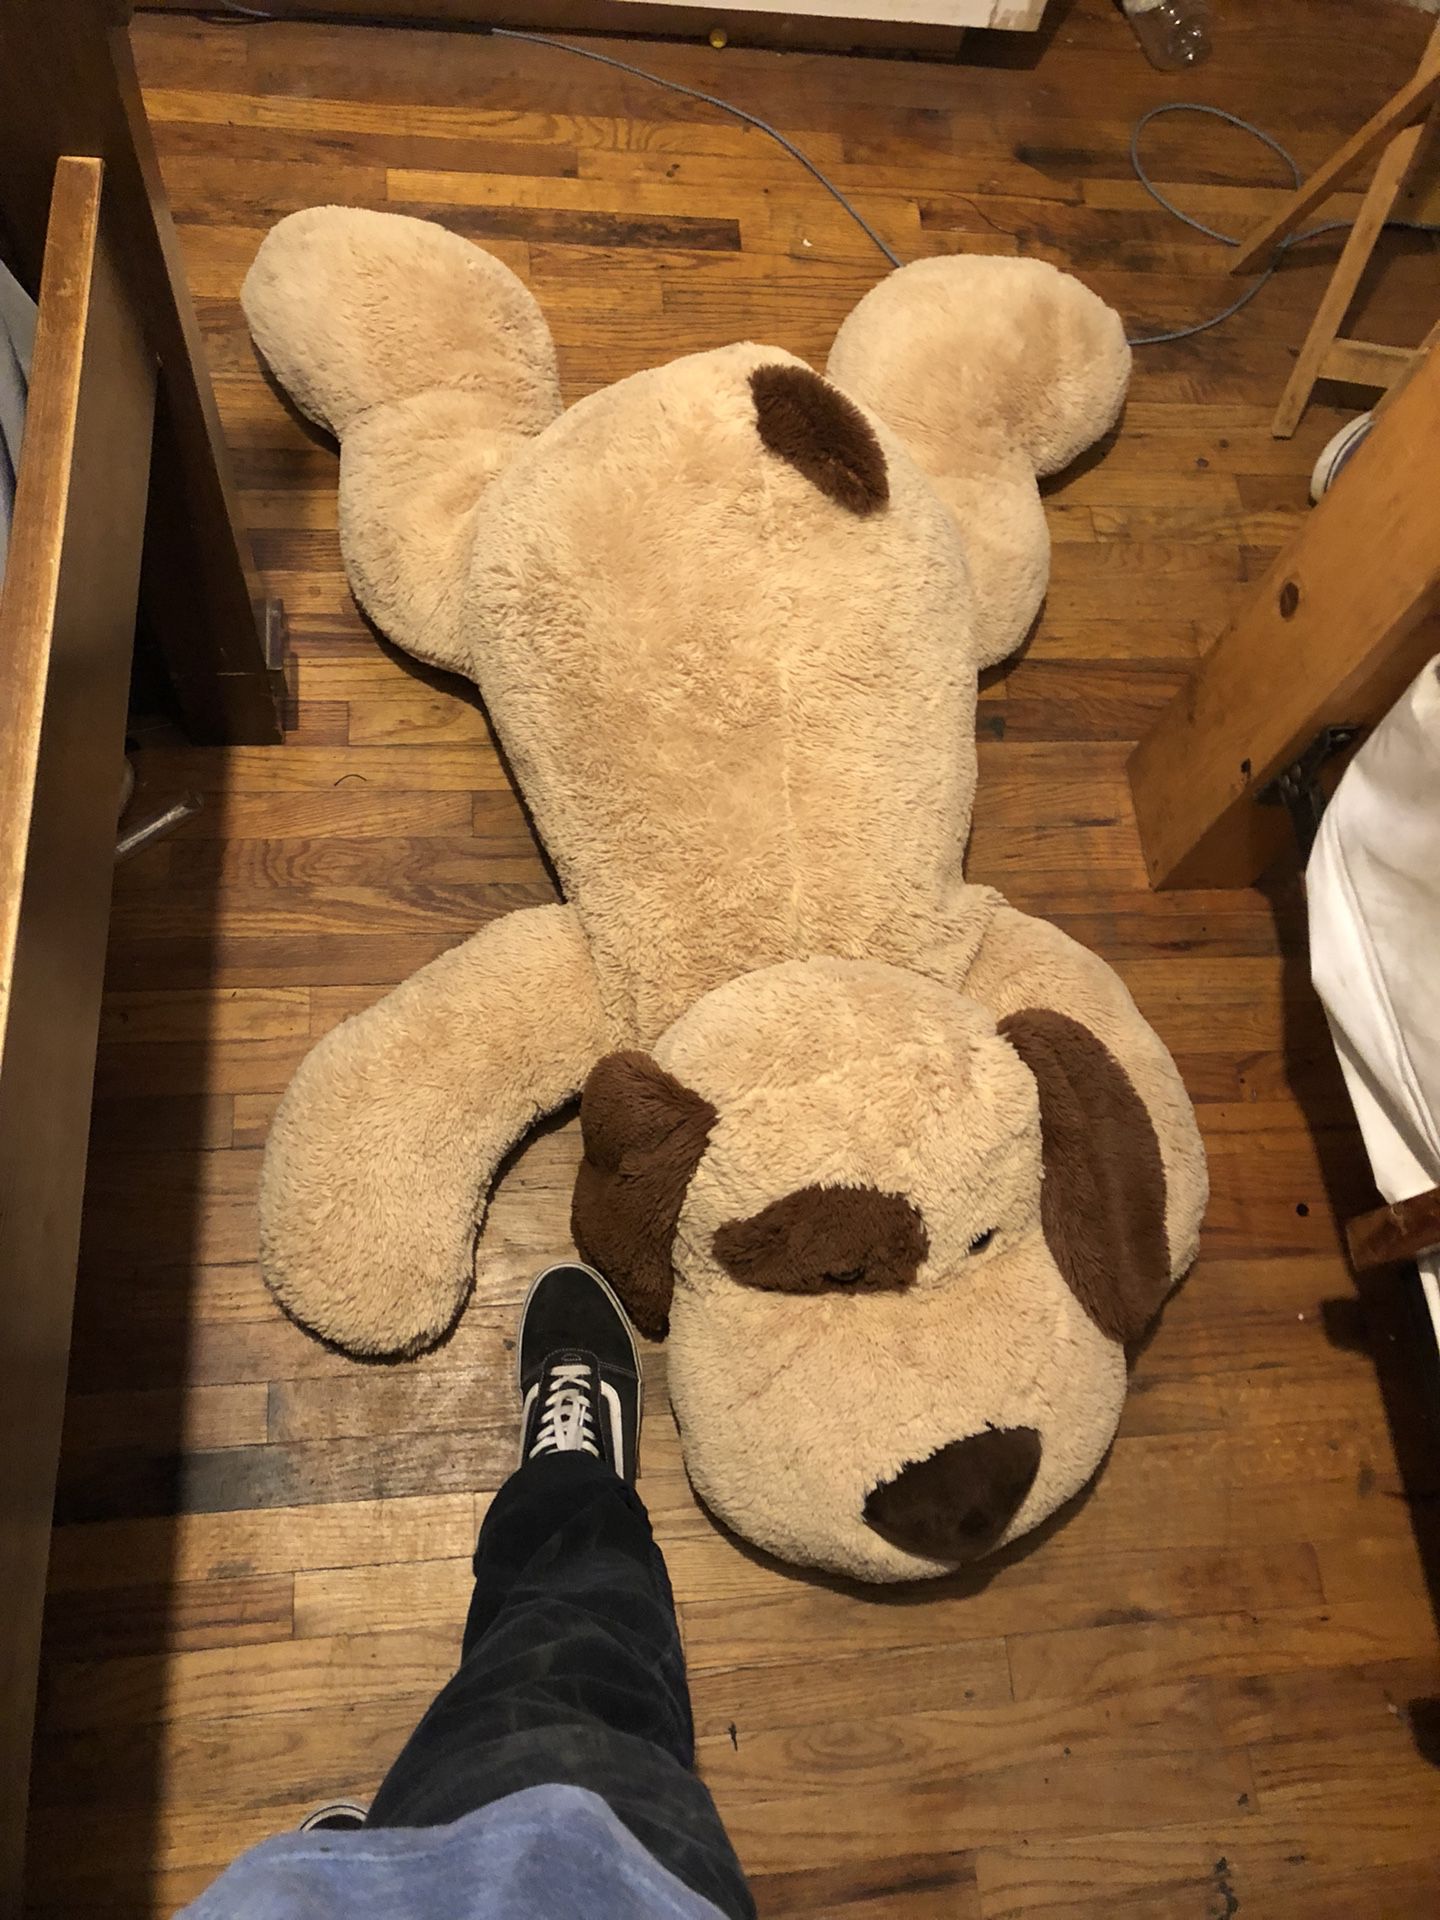 Big Teddy bear (dog) 4 ft